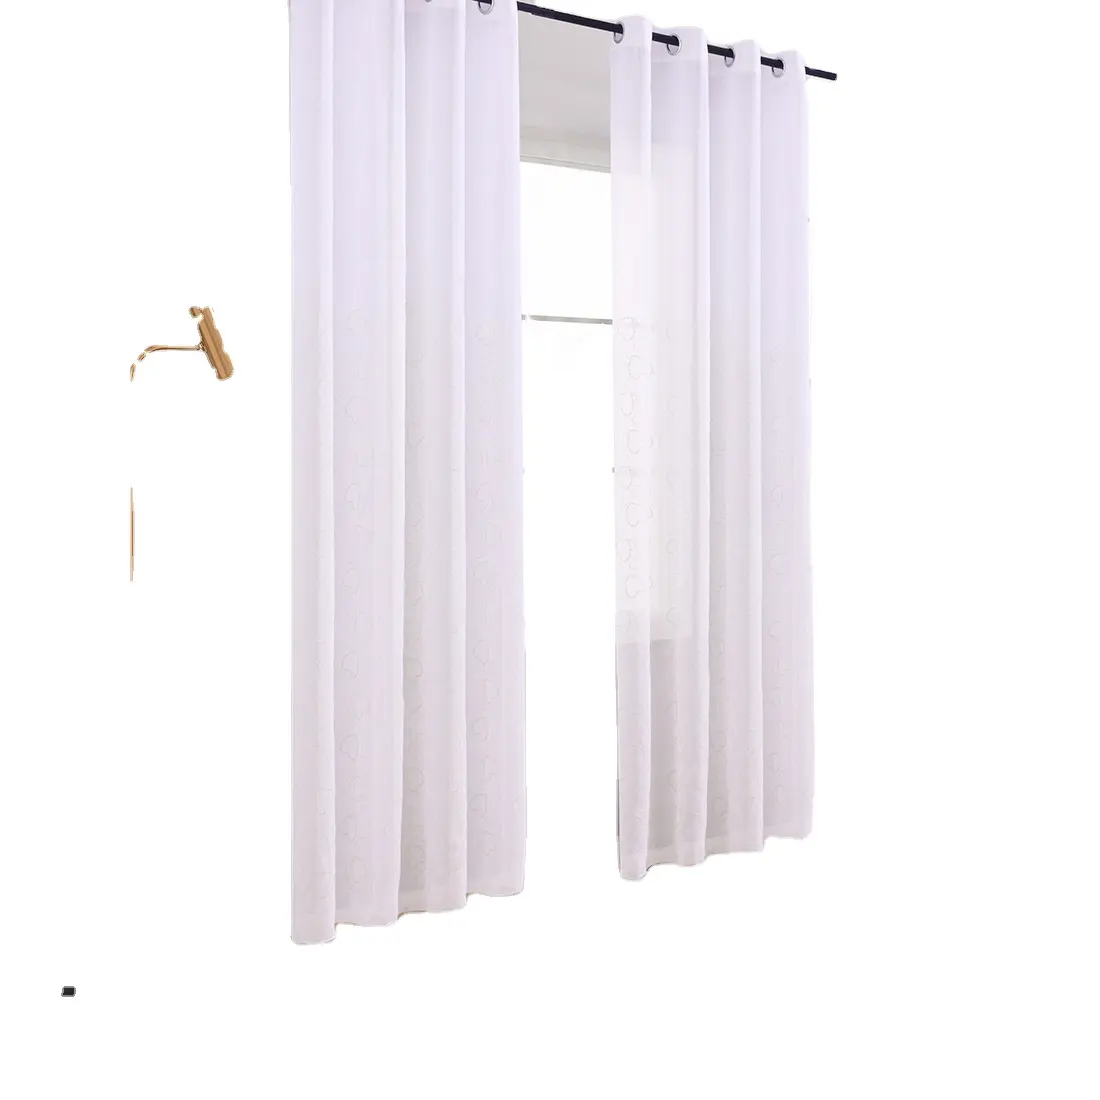 تصميم فاخر مخصص بوليستر أبيض مطرز بالزهور ستارة نافذة شفافة لغرفة المطبخ وغرفة المعيشة